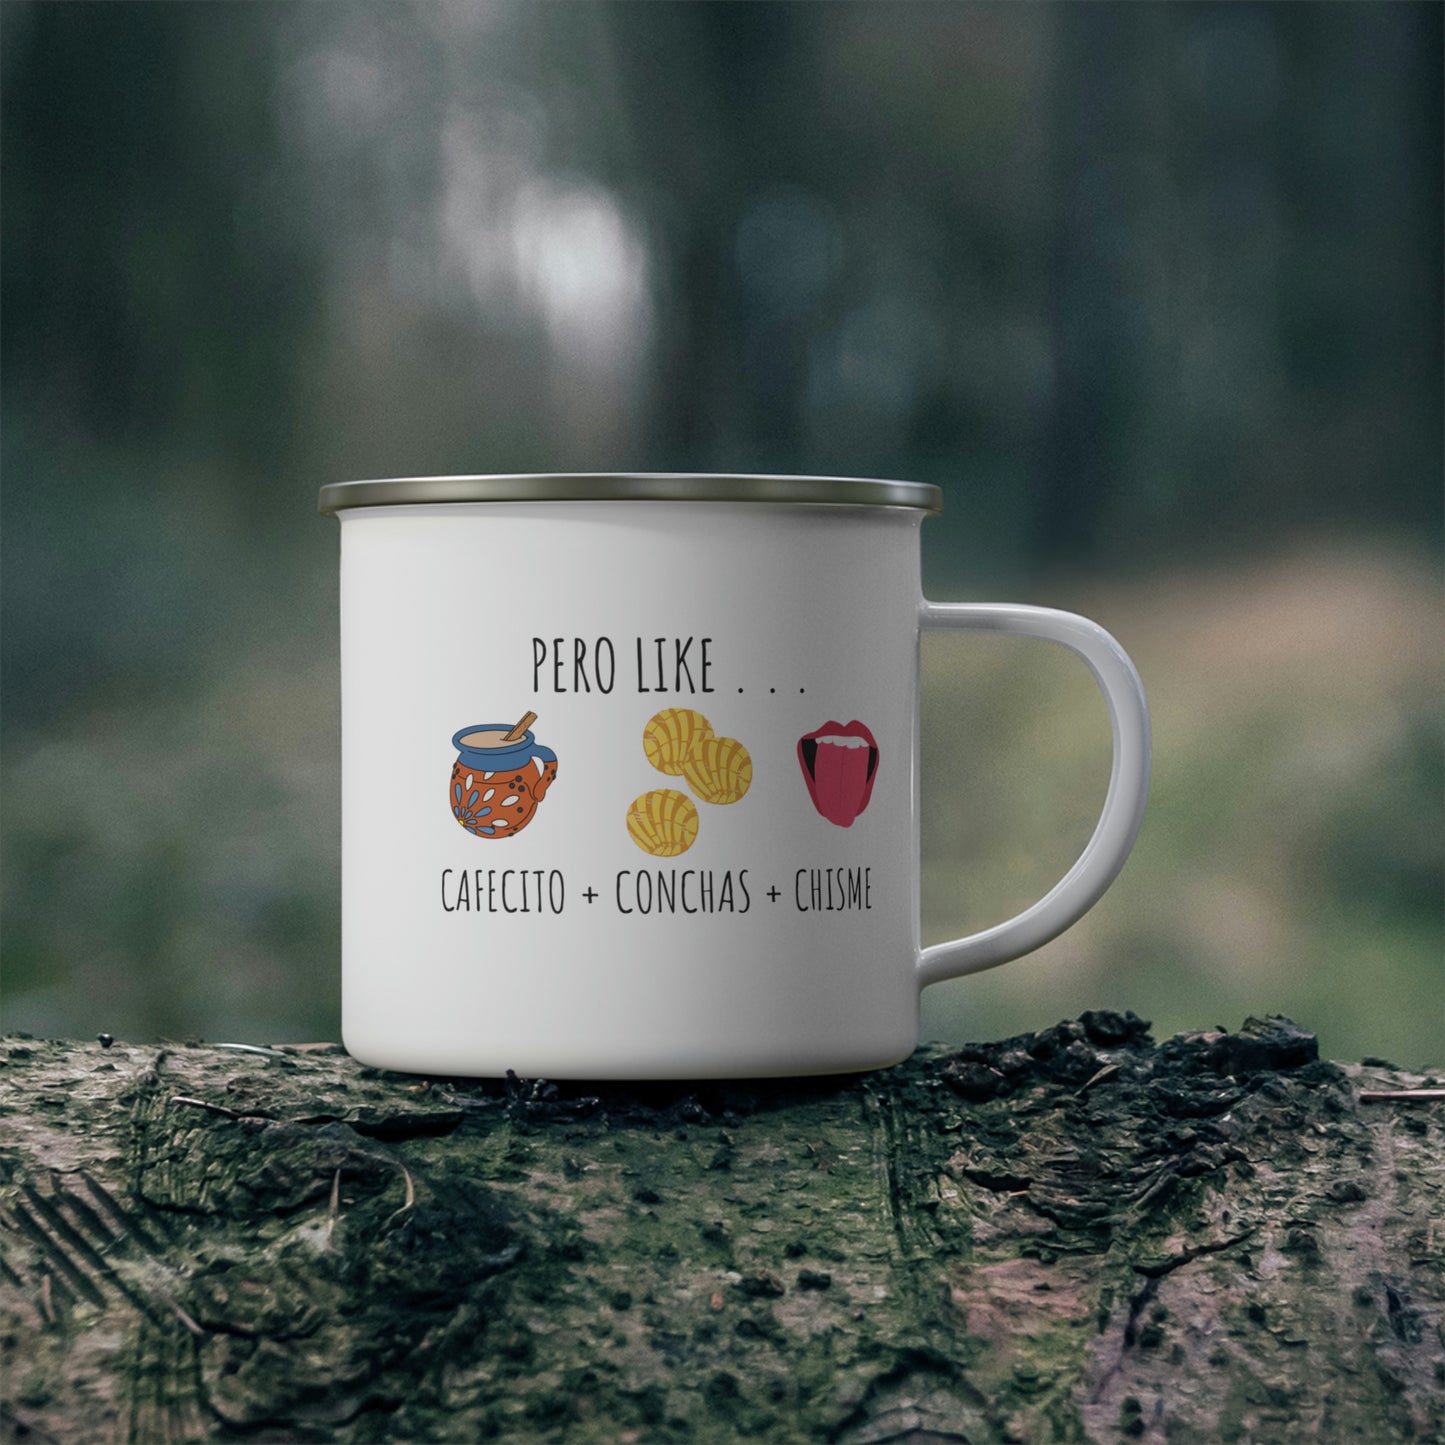 Coffee, Conchas, & Chisme | Enamel Camping Coffee Mug